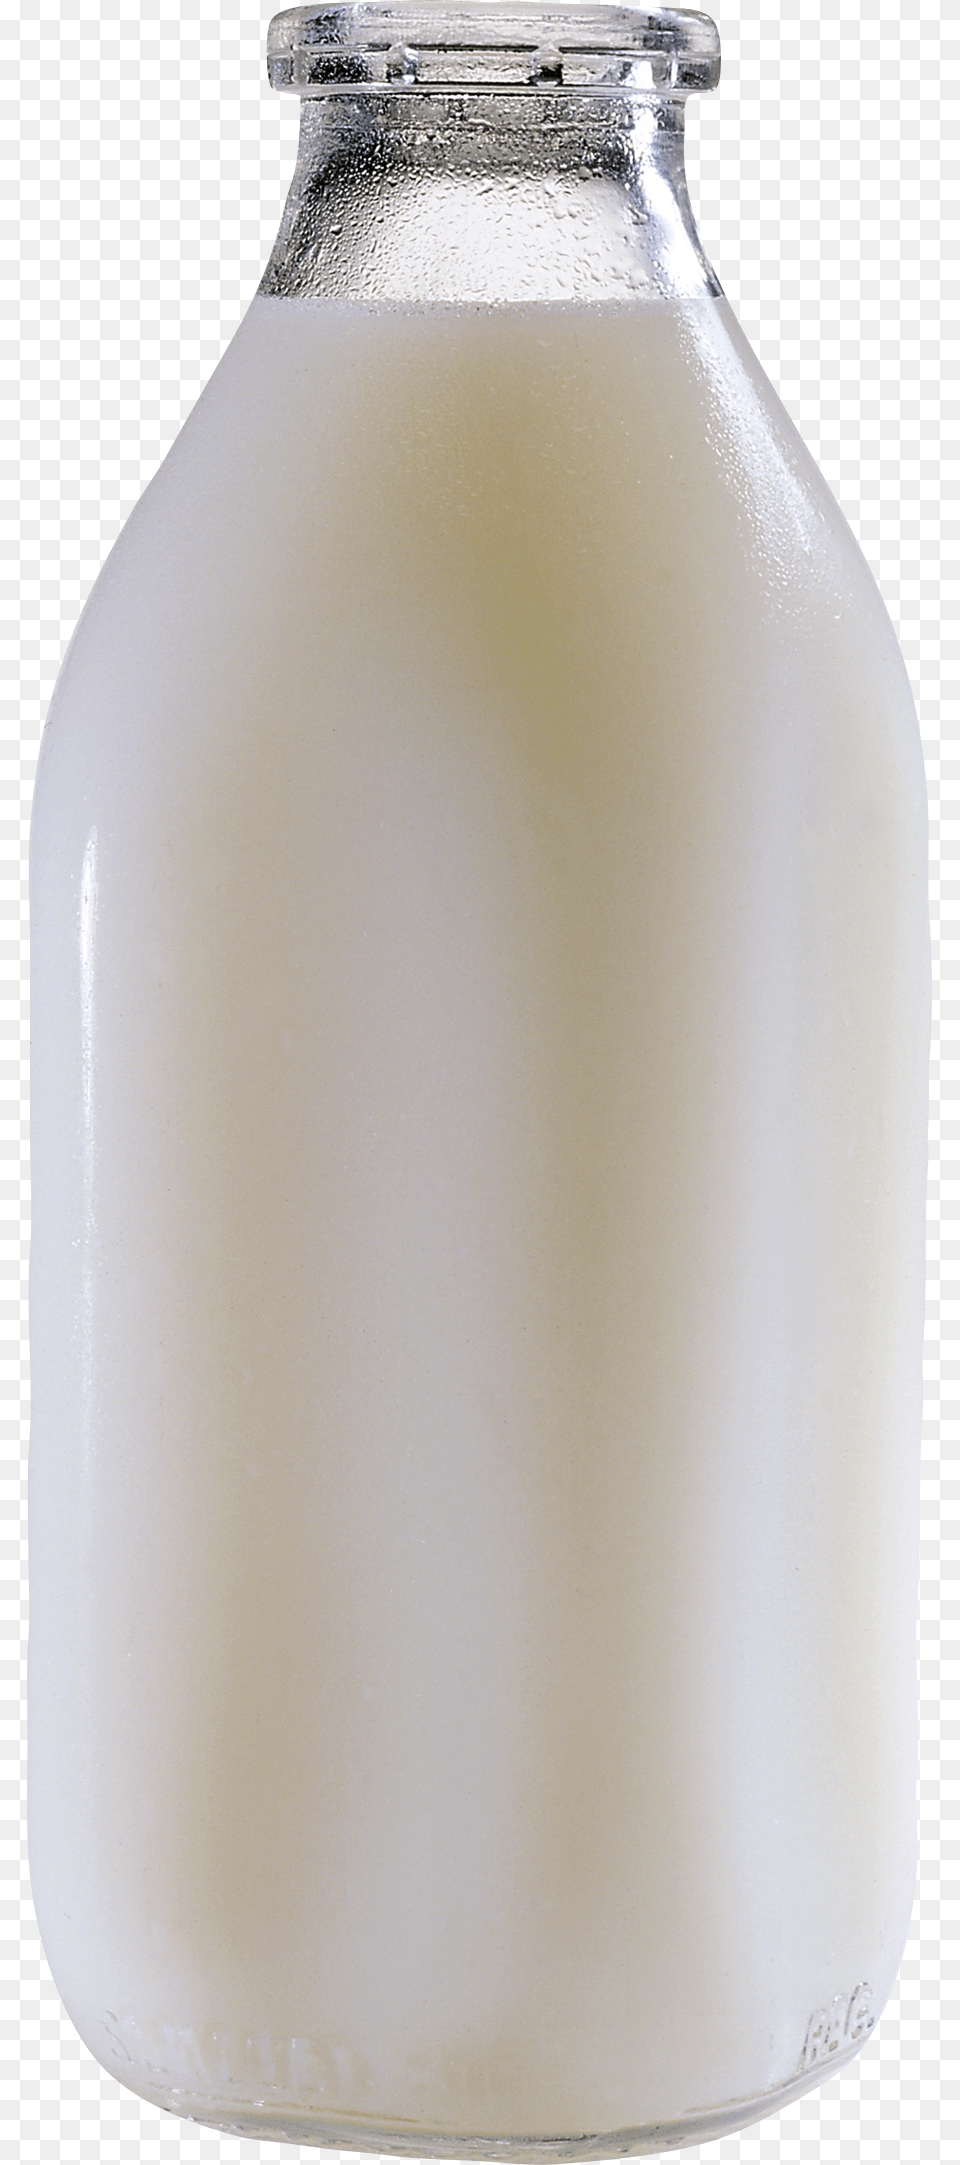 Bottle Of Milk Transparent Background, Beverage, Dairy, Food Free Png Download